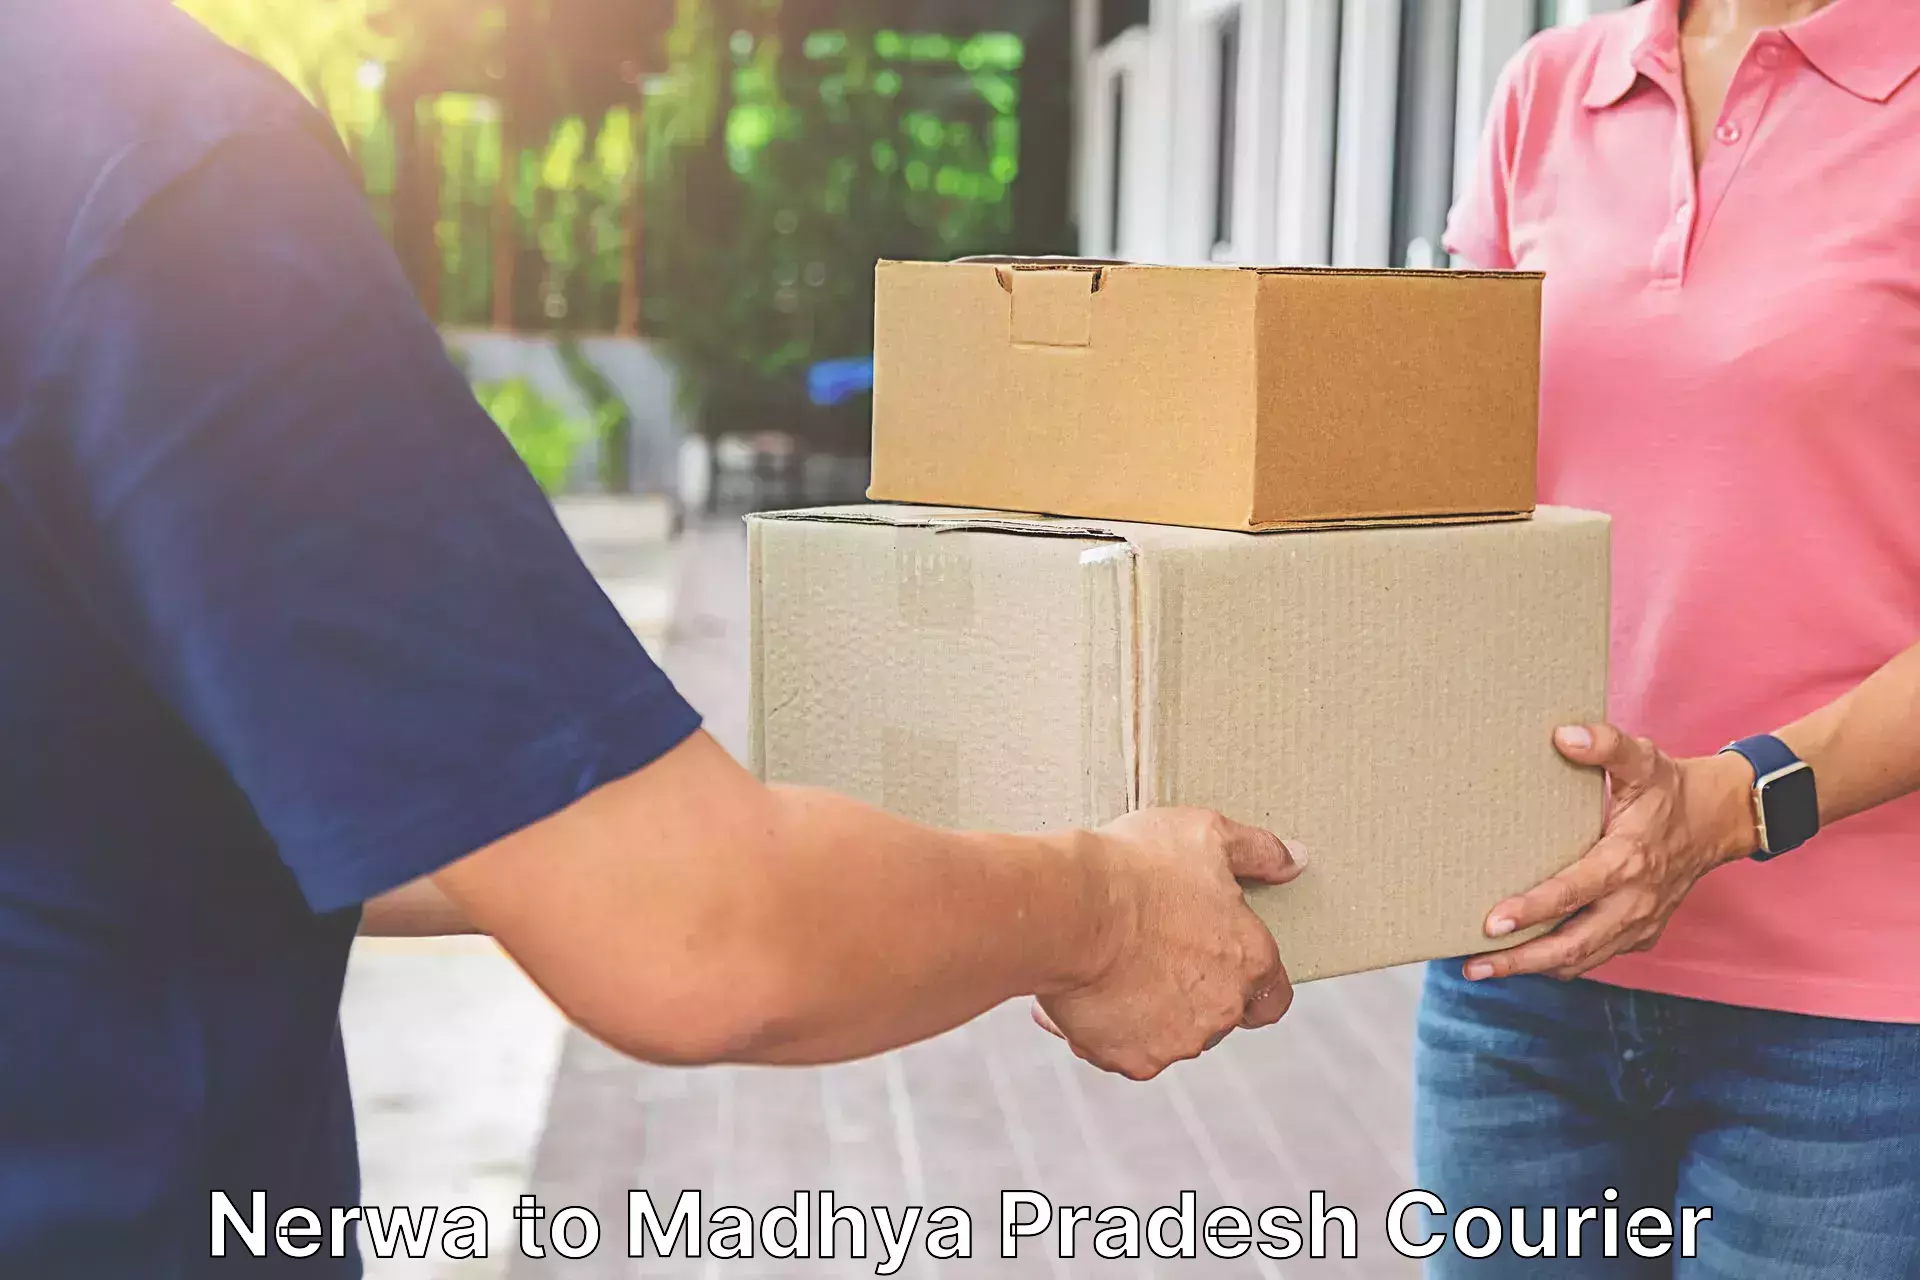 Corporate courier solutions Nerwa to Madhya Pradesh